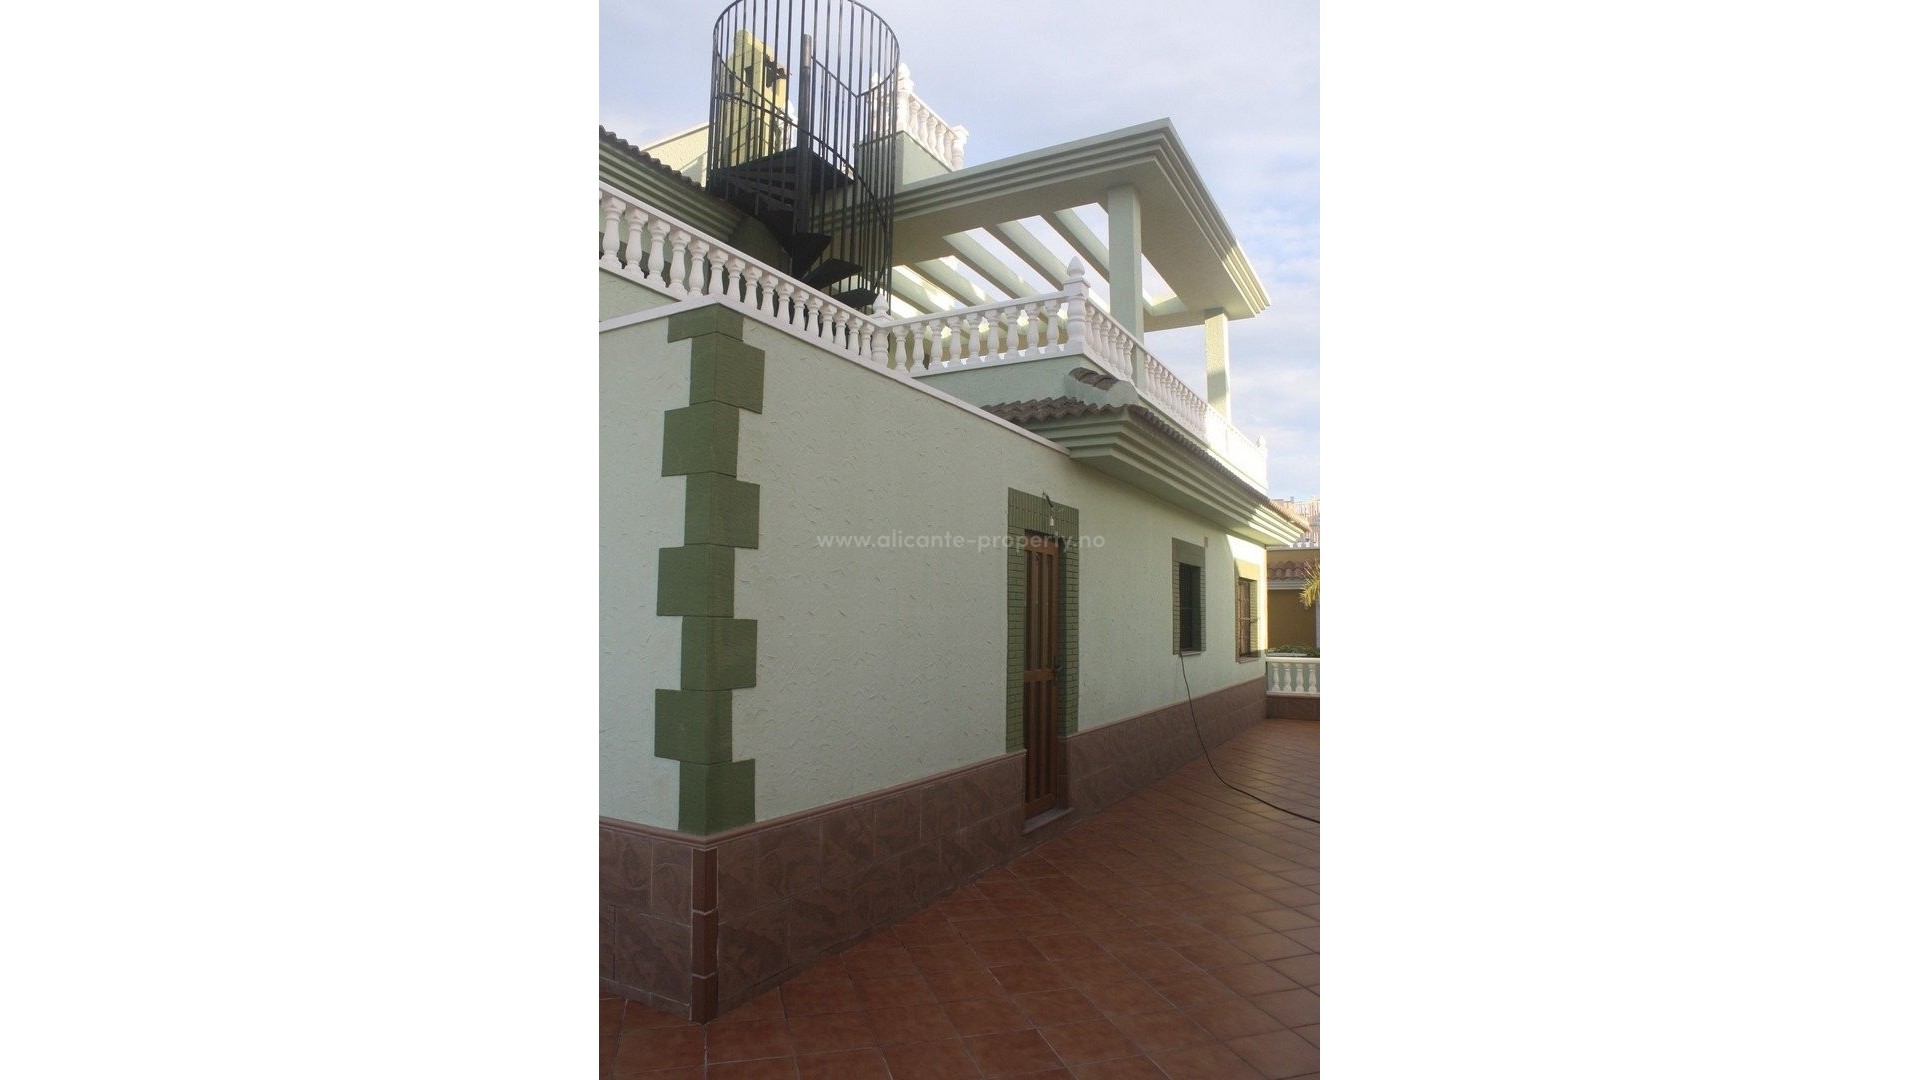 Vakker villa i Los Altos, Torrevieja, 3 soverom, 4 bad, stort kjøkken, privat hage med basseng, stor terrasse, dobbel garasje